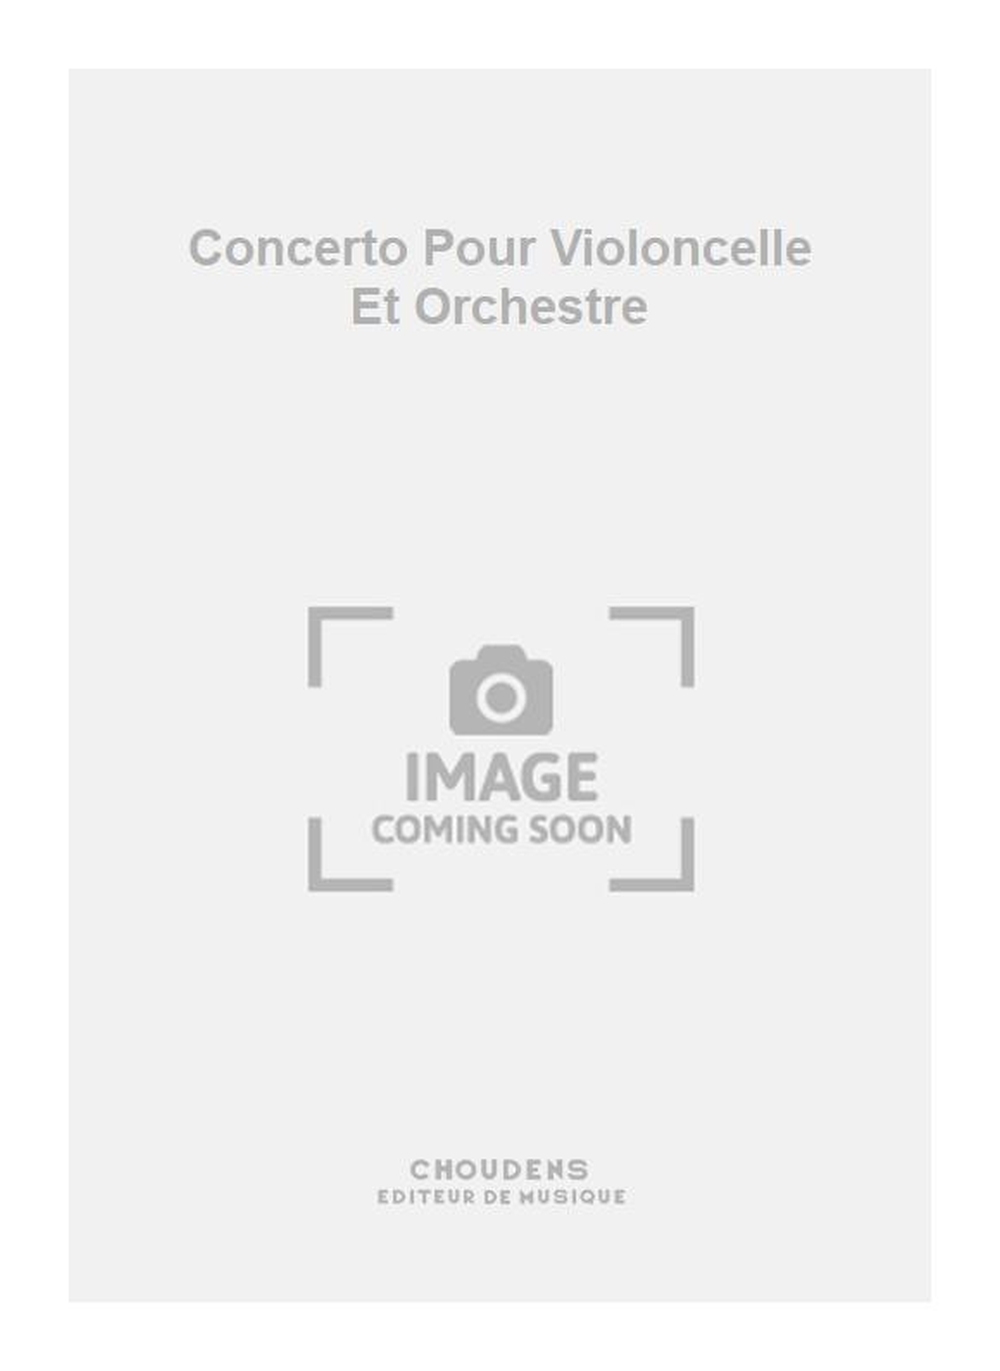 Concerto Pour Violoncelle Et Orchestre